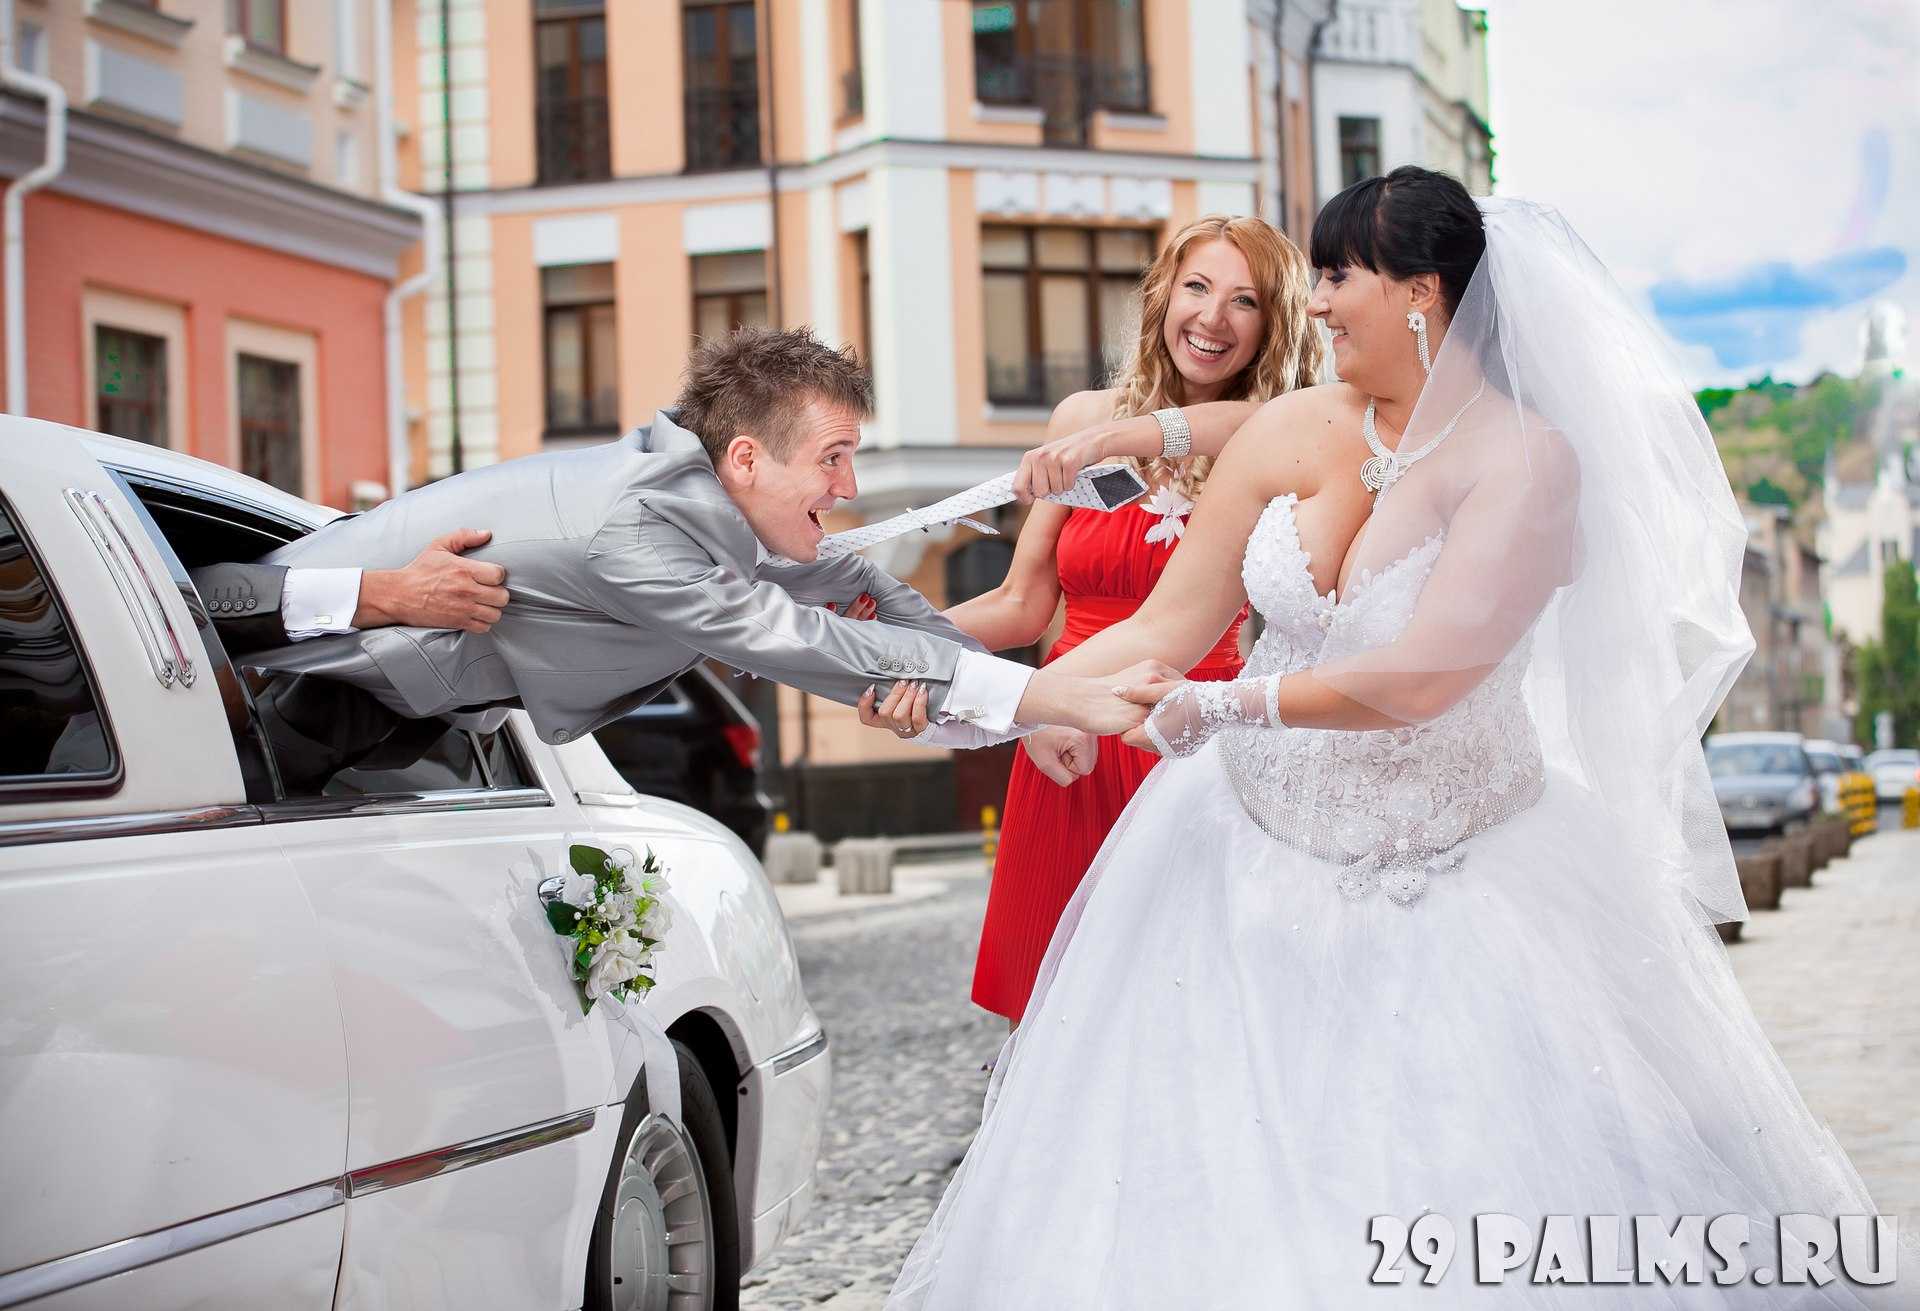 Топ-10 гостей на свадьбе, которые всех раздражают: смешные фото